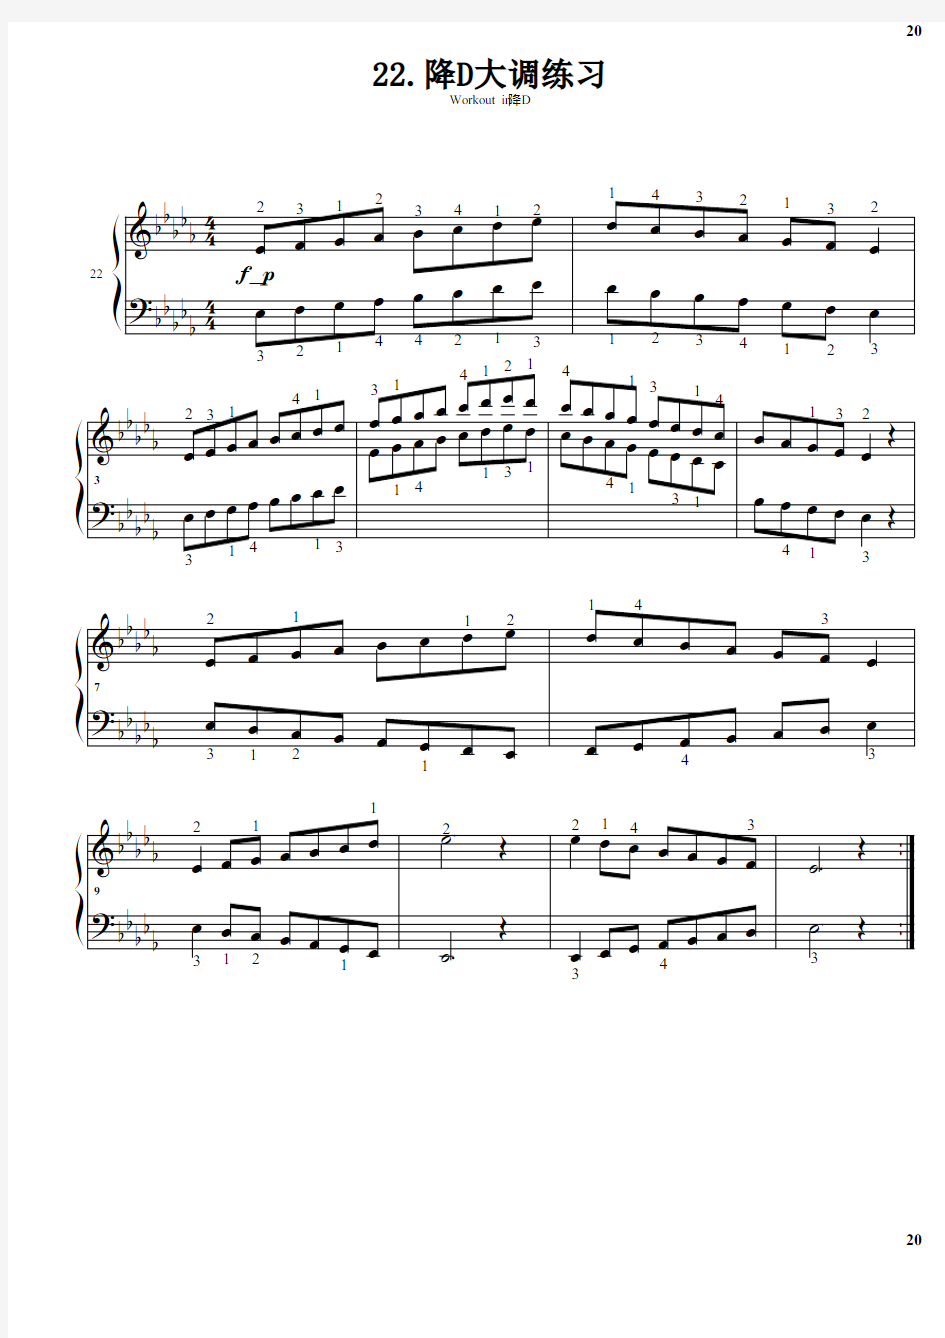 22.降D大调练习 巴斯蒂安钢琴教程(4)技巧部分 原版 正谱 五线谱 钢琴谱